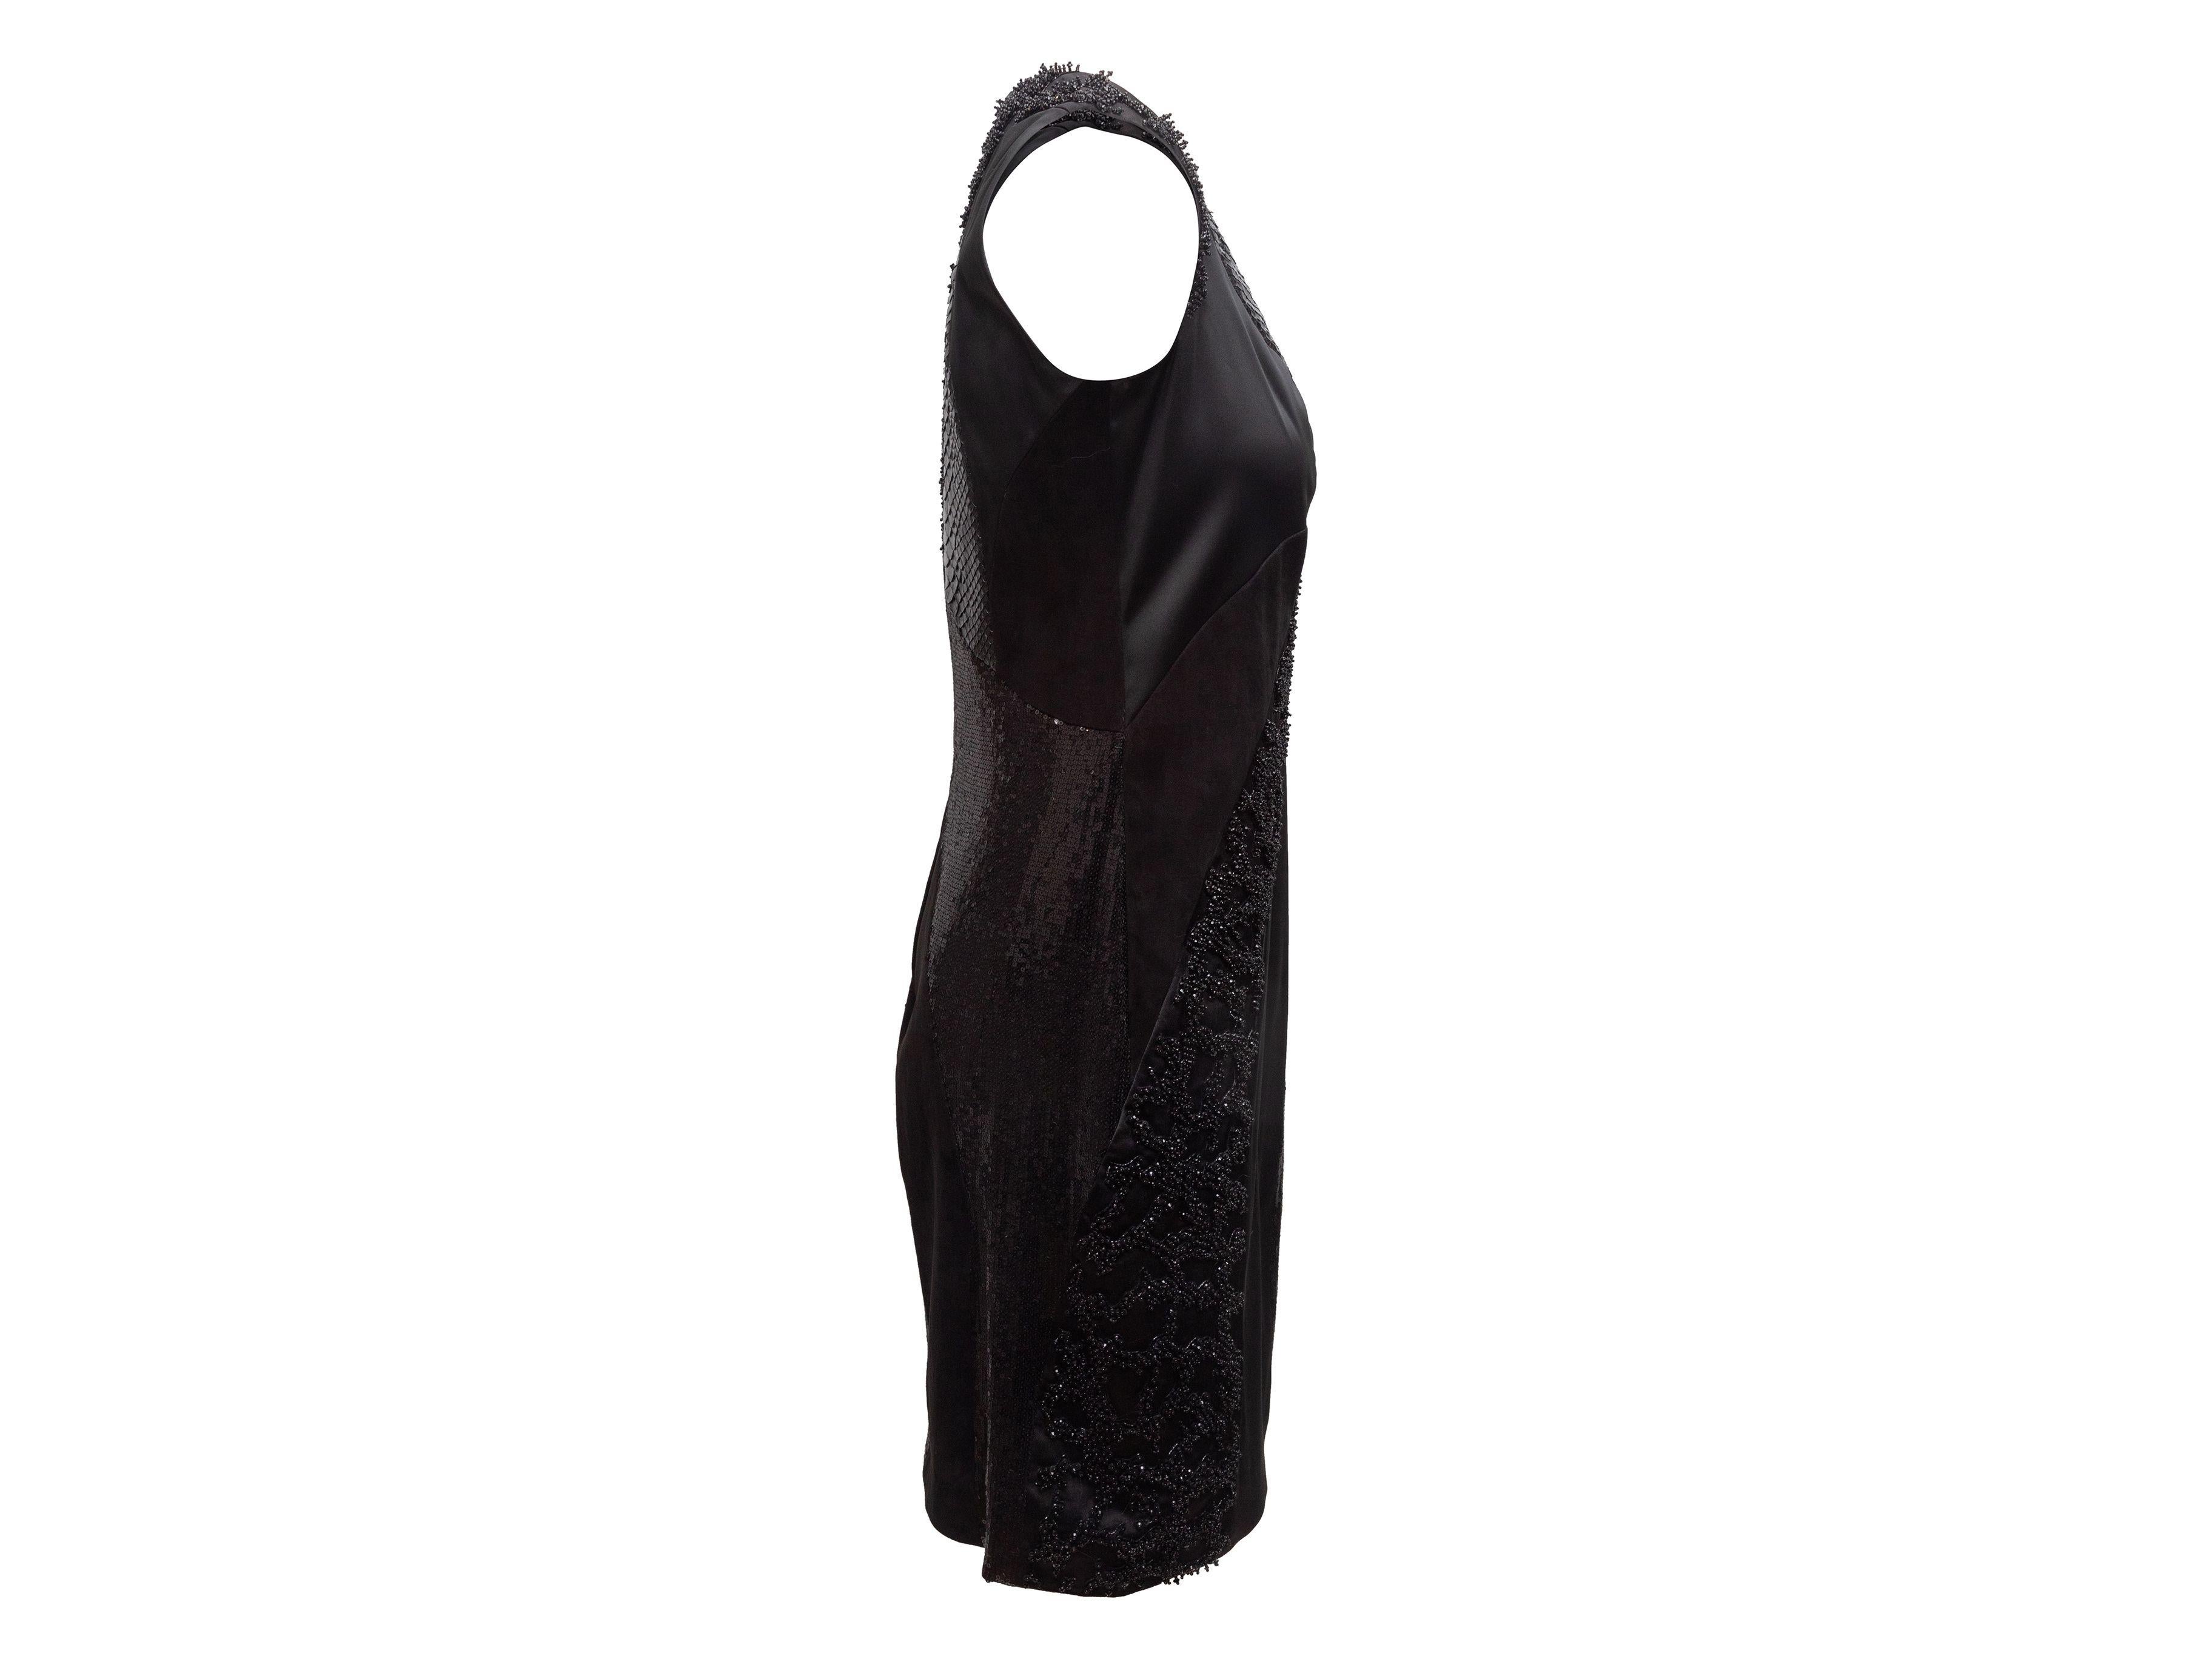 Rubin Singer Black Embellished Sleeveless Dress 1